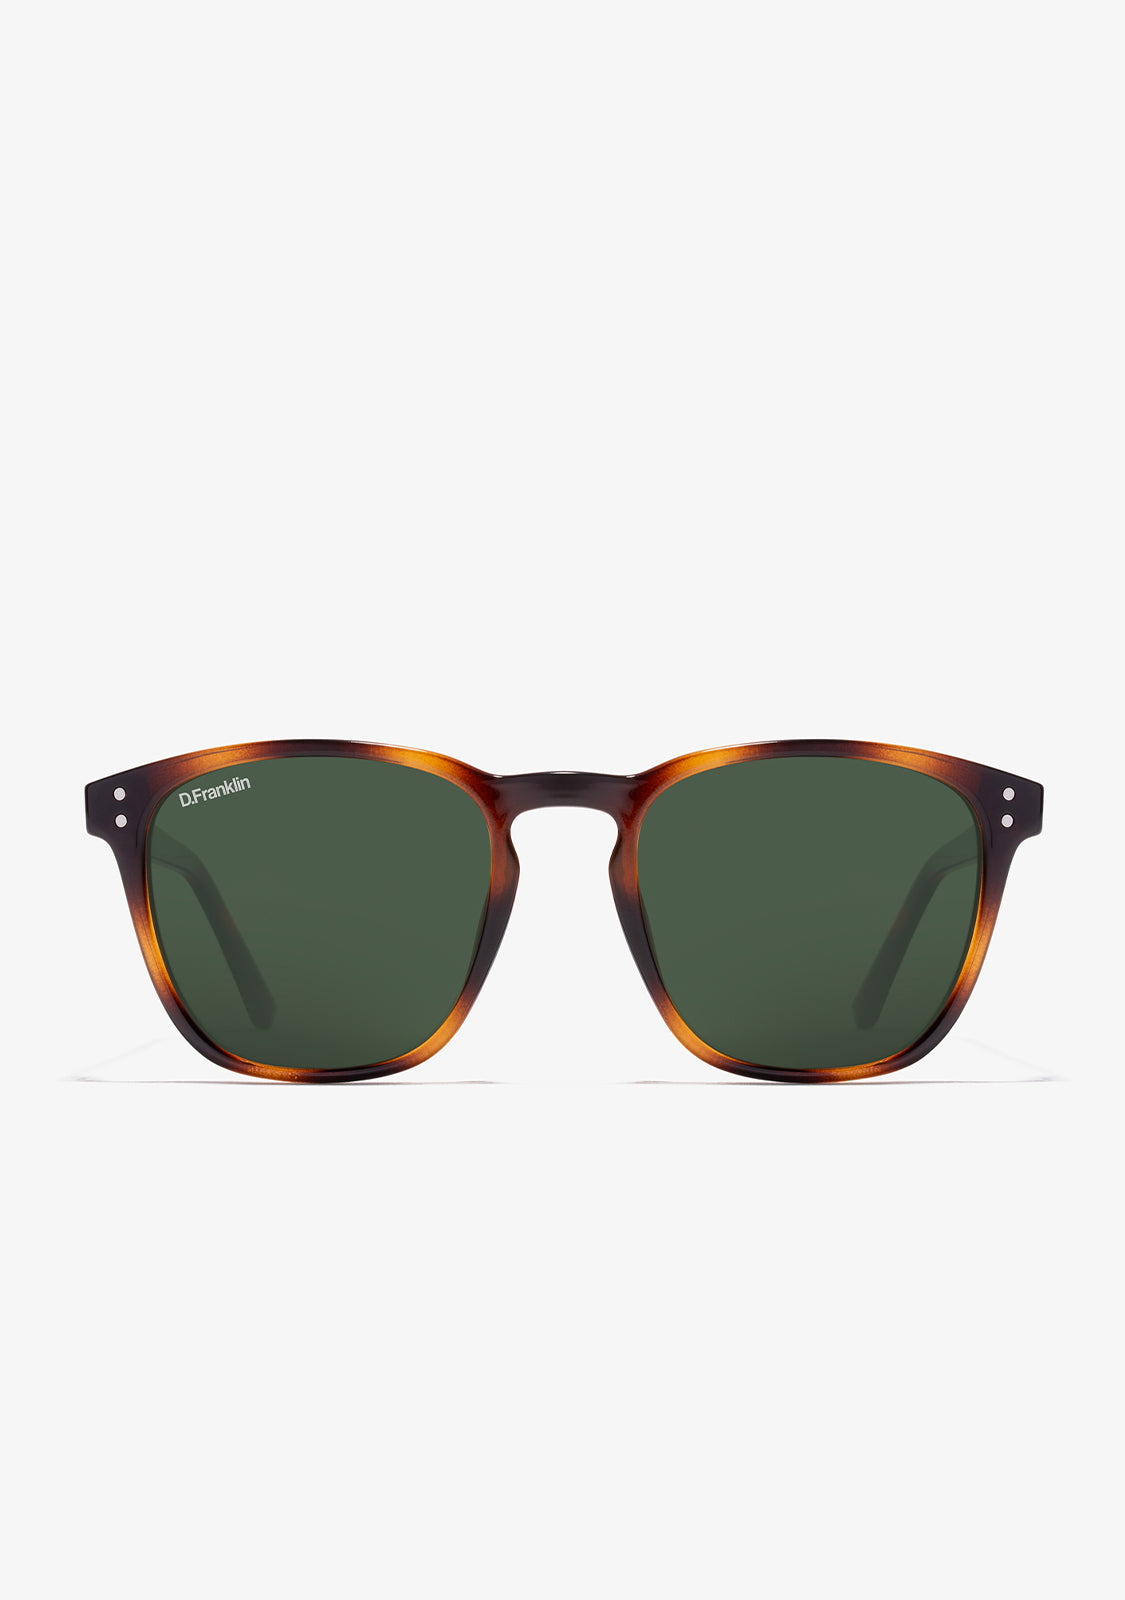 Las 5 mejores gafas de sol para lucir genial con poco presupuesto